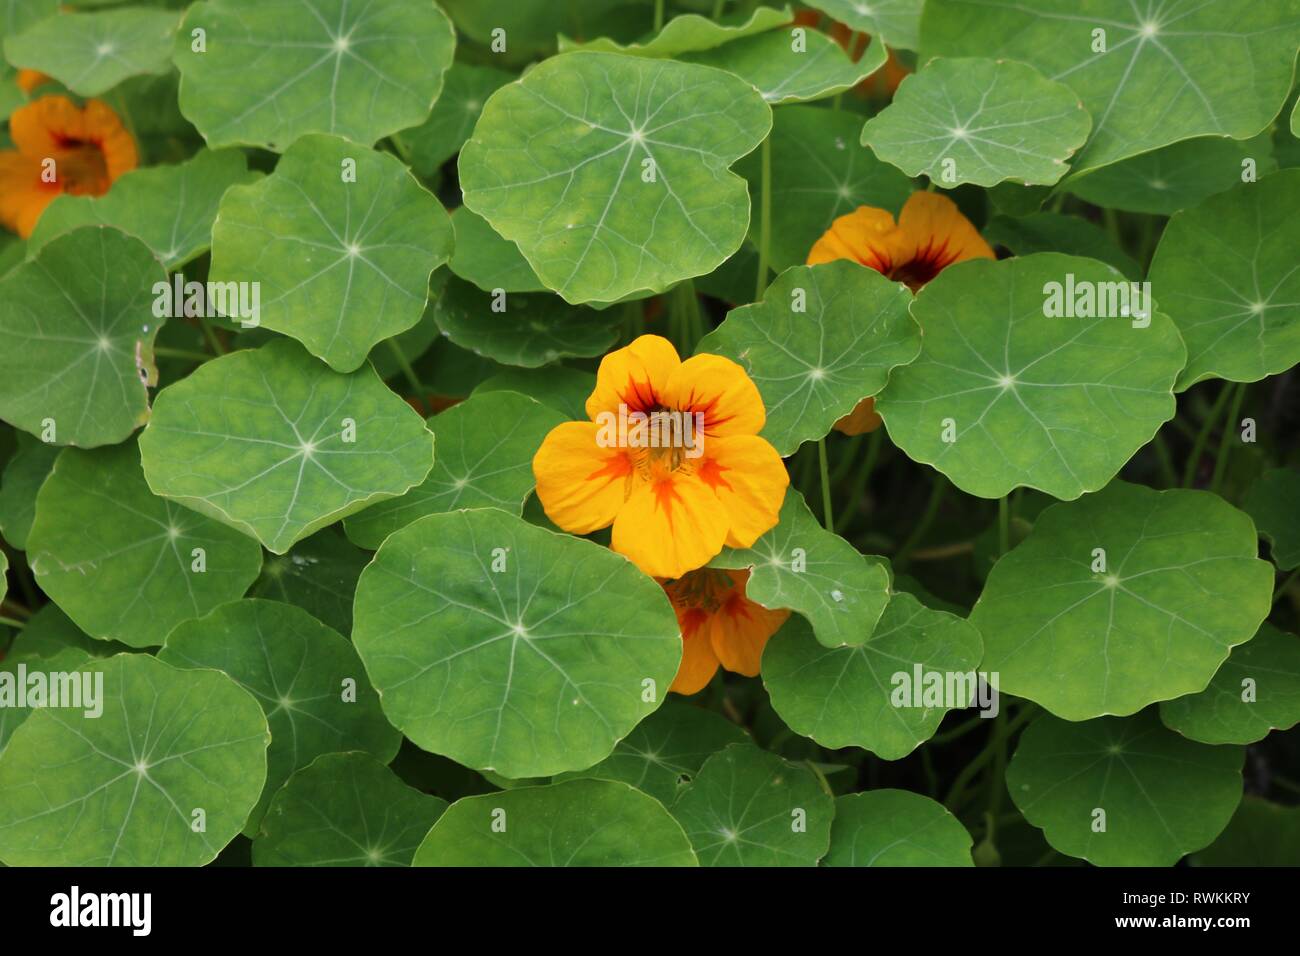 Bett von kapuzinerkresse Pflanzen mit gelben und orangen Blüten und flache, runde Blätter Stockfoto